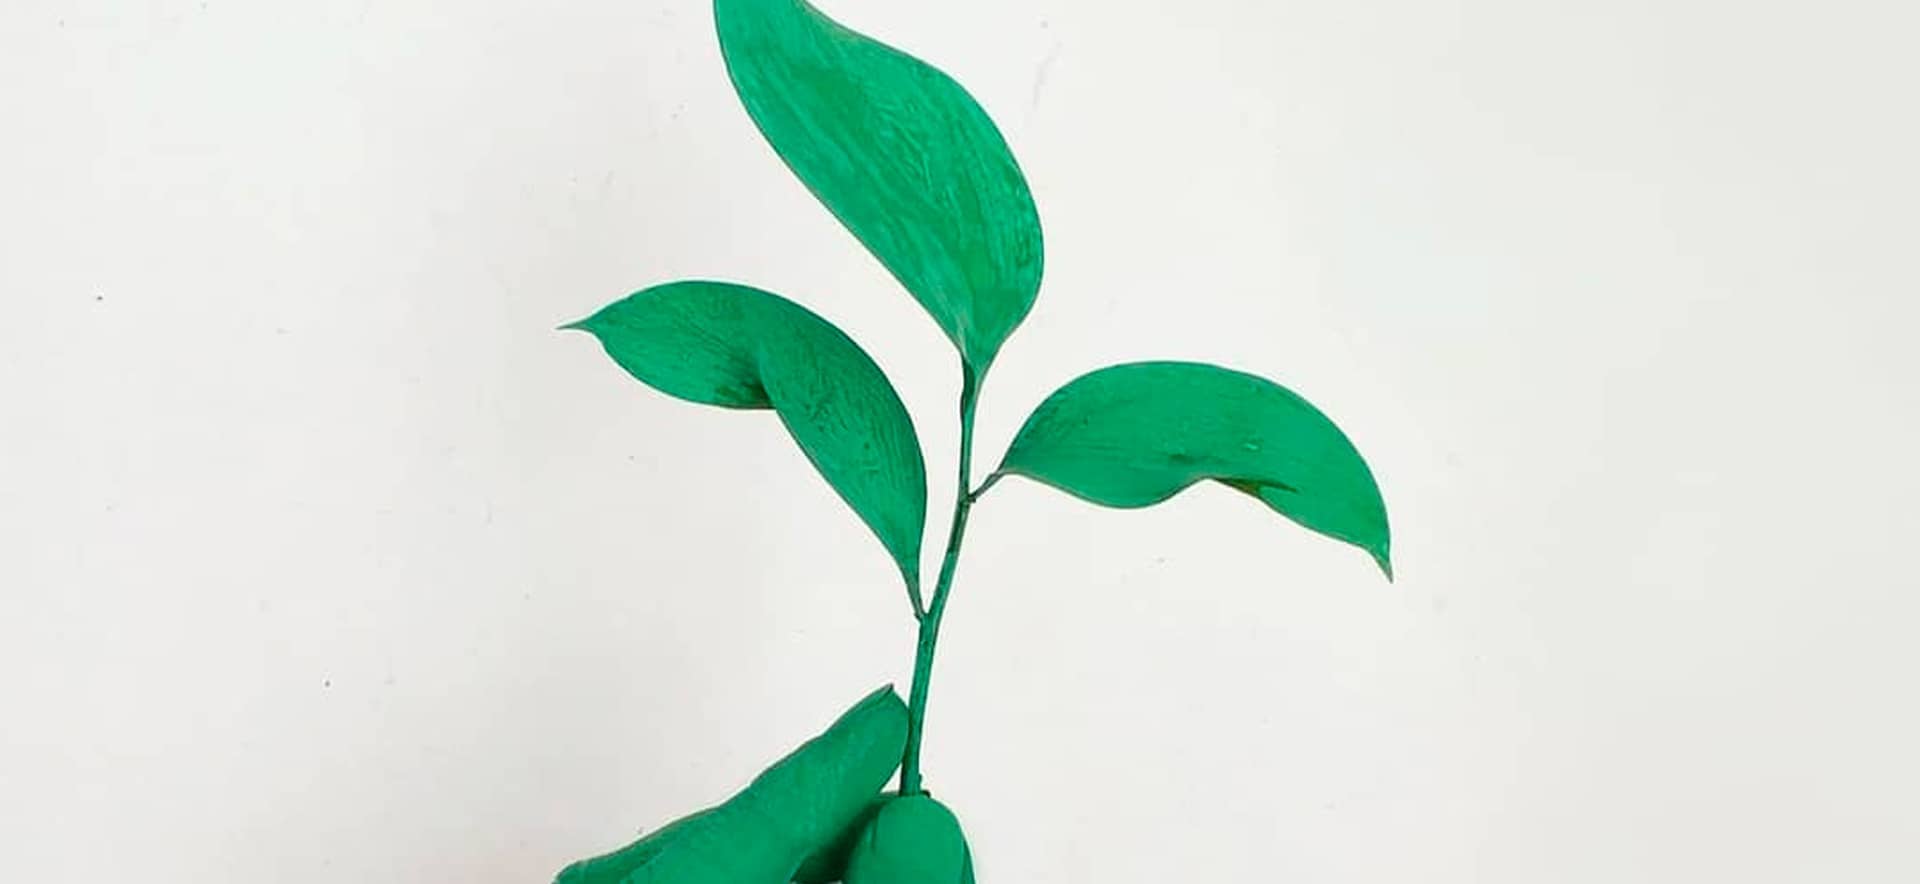 image of green leaf